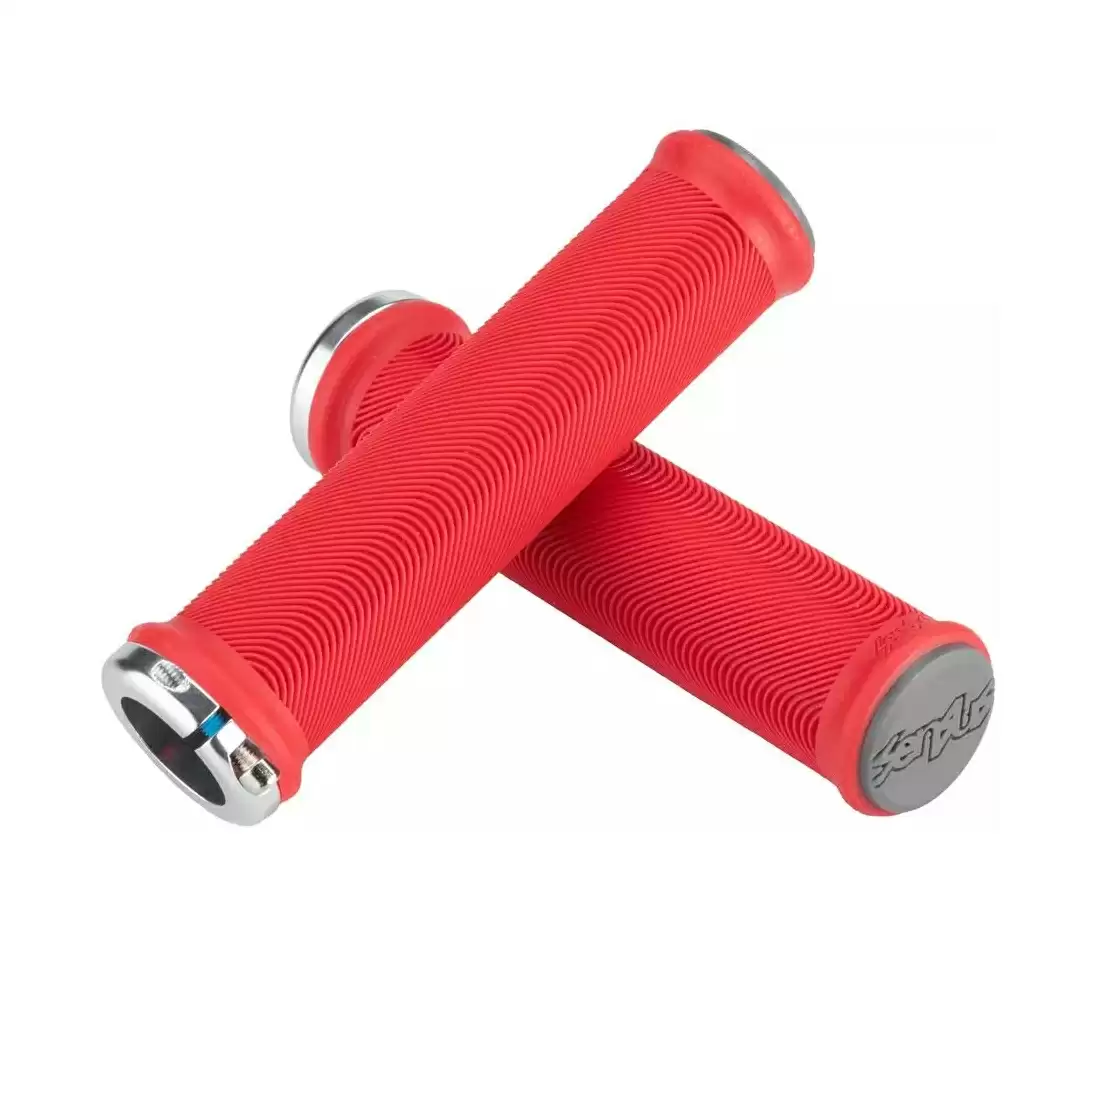 Paire de poignées Sensus Lite rouge 130mm - image